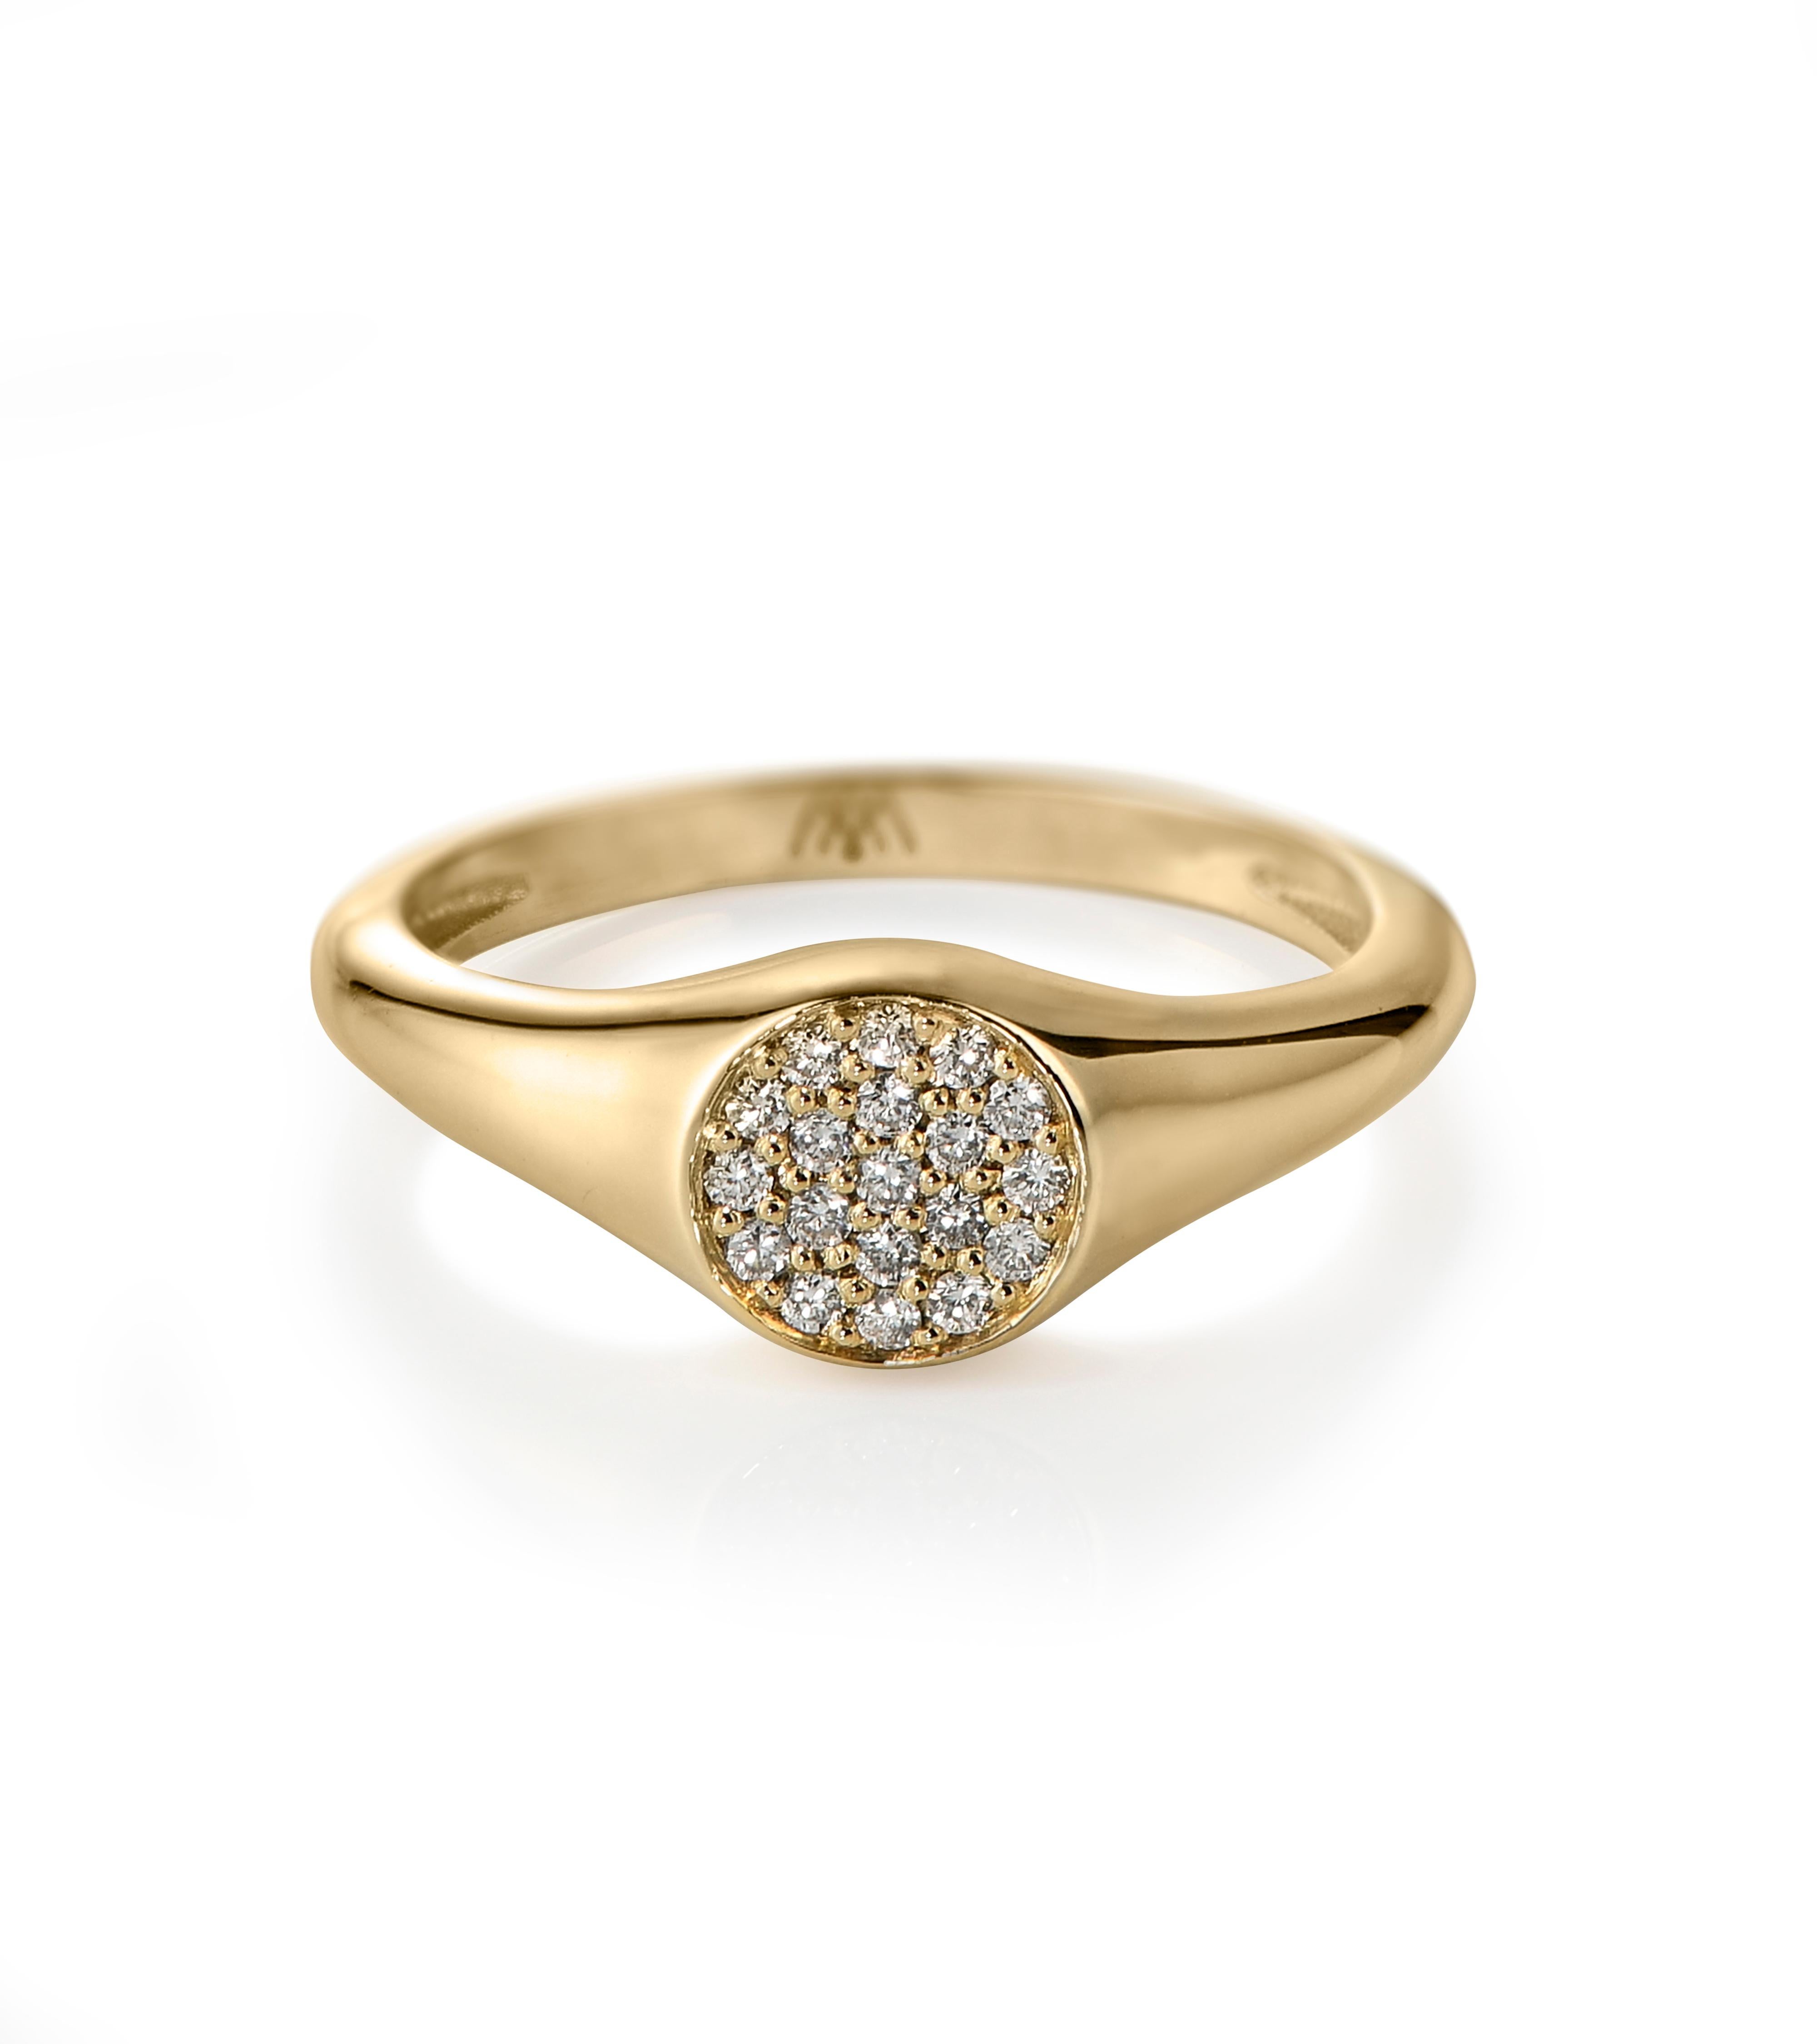 Notre chevalière à disque de diamants est conçue pour s'adapter confortablement à votre petit doigt et deviendra votre nouvelle pièce maîtresse. Il est serti de diamants naturels qui ressemblent à des paillettes, en or jaune 18 carats.

Toutes nos